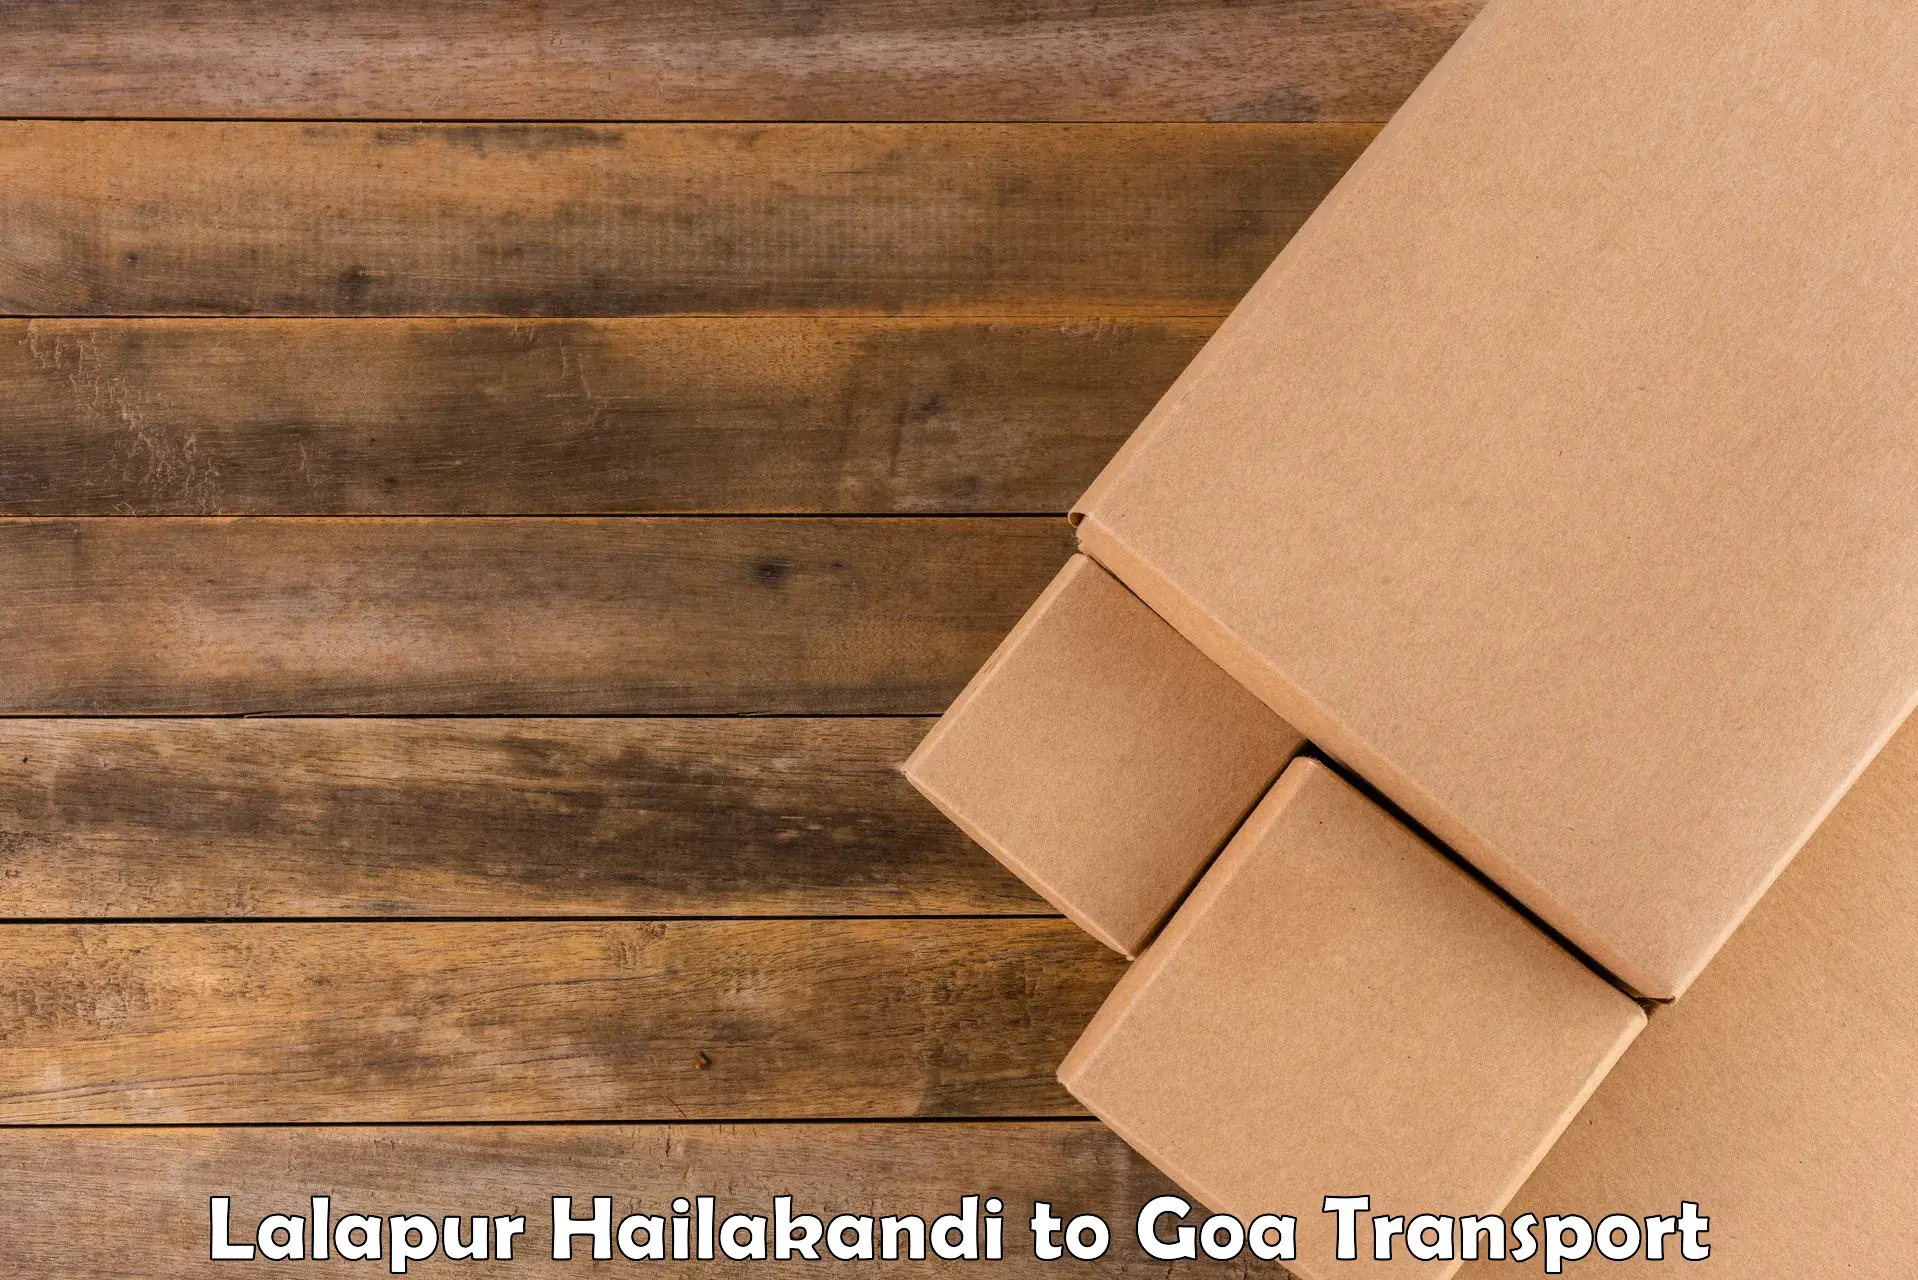 Cycle transportation service Lalapur Hailakandi to Goa University